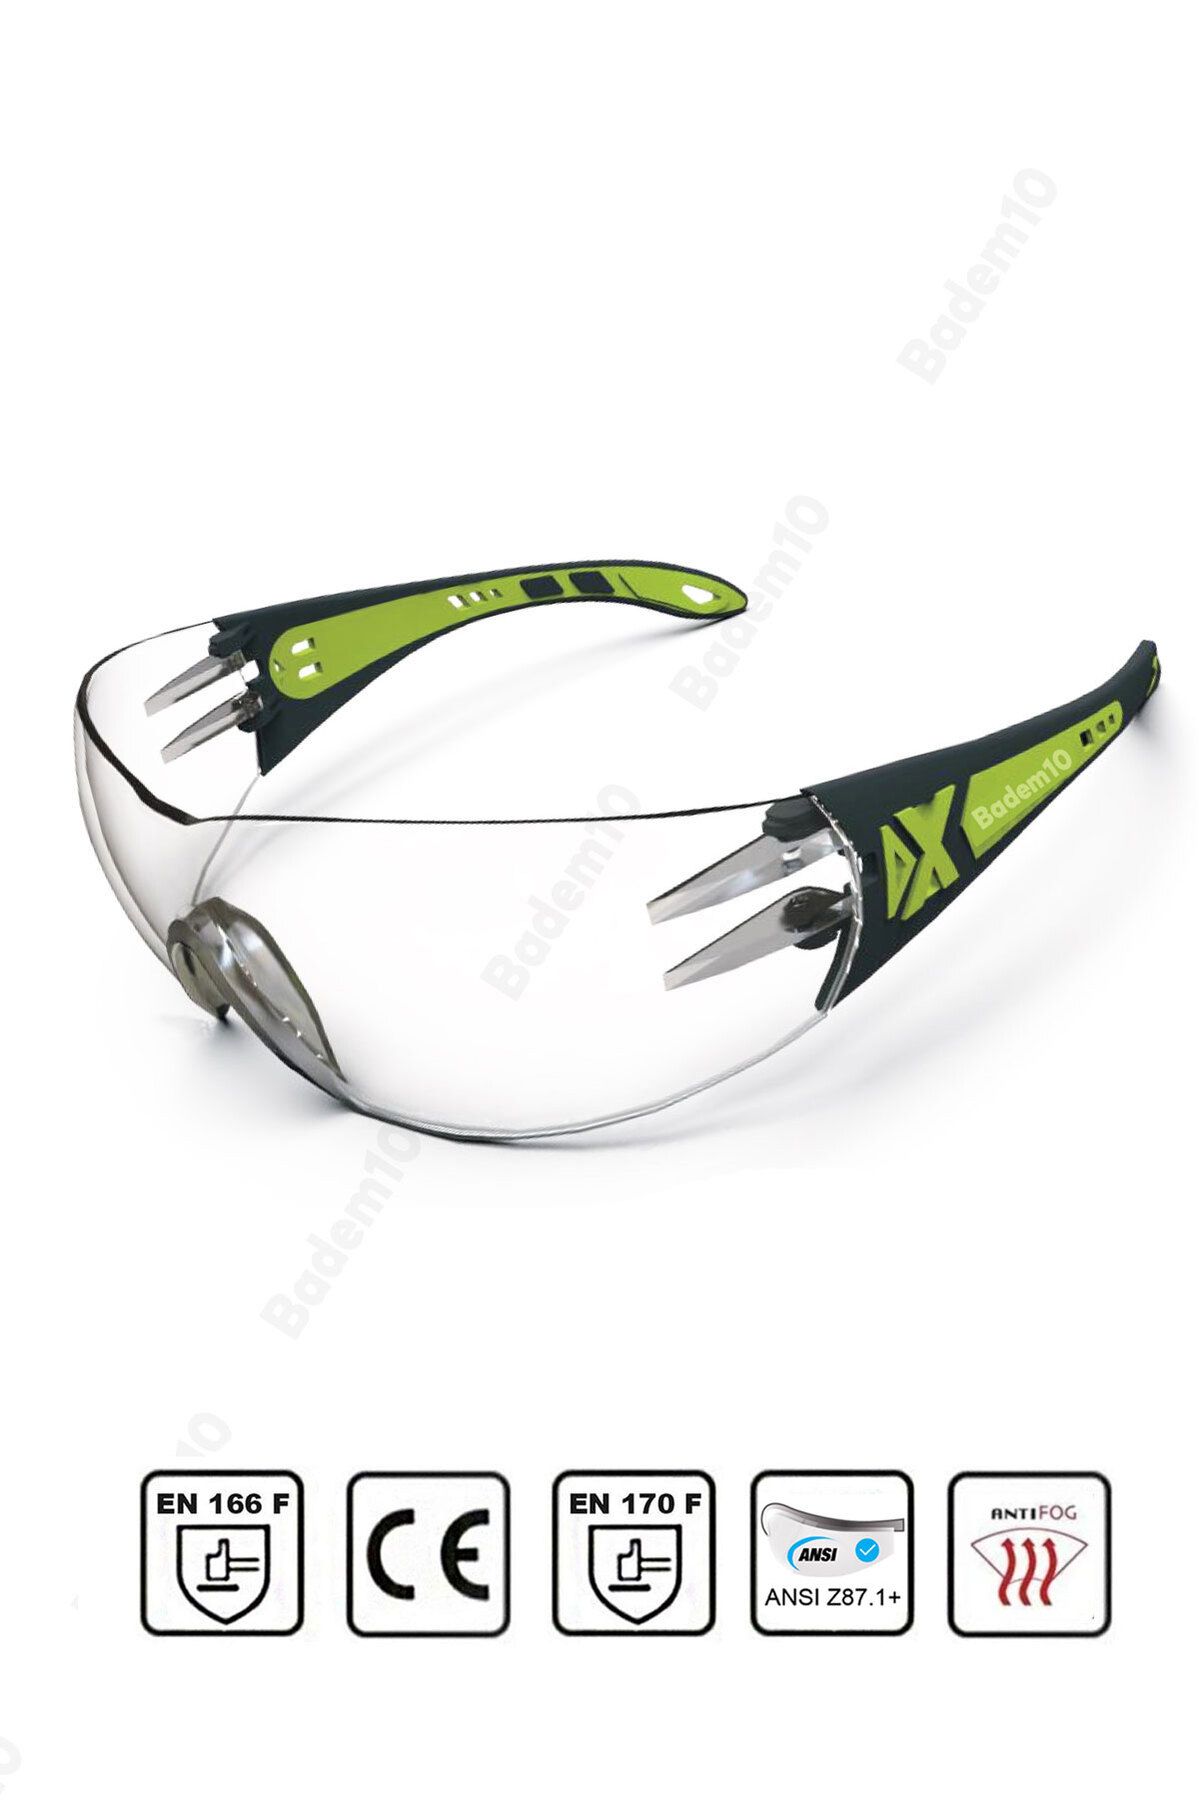 Badem10 Bisiklet Koşu Motor Gözlüğü Uv Korumalı Sporcu Bisikletçi Buğulanmaz Gözlük Silikon Kulaklık Şeffaf